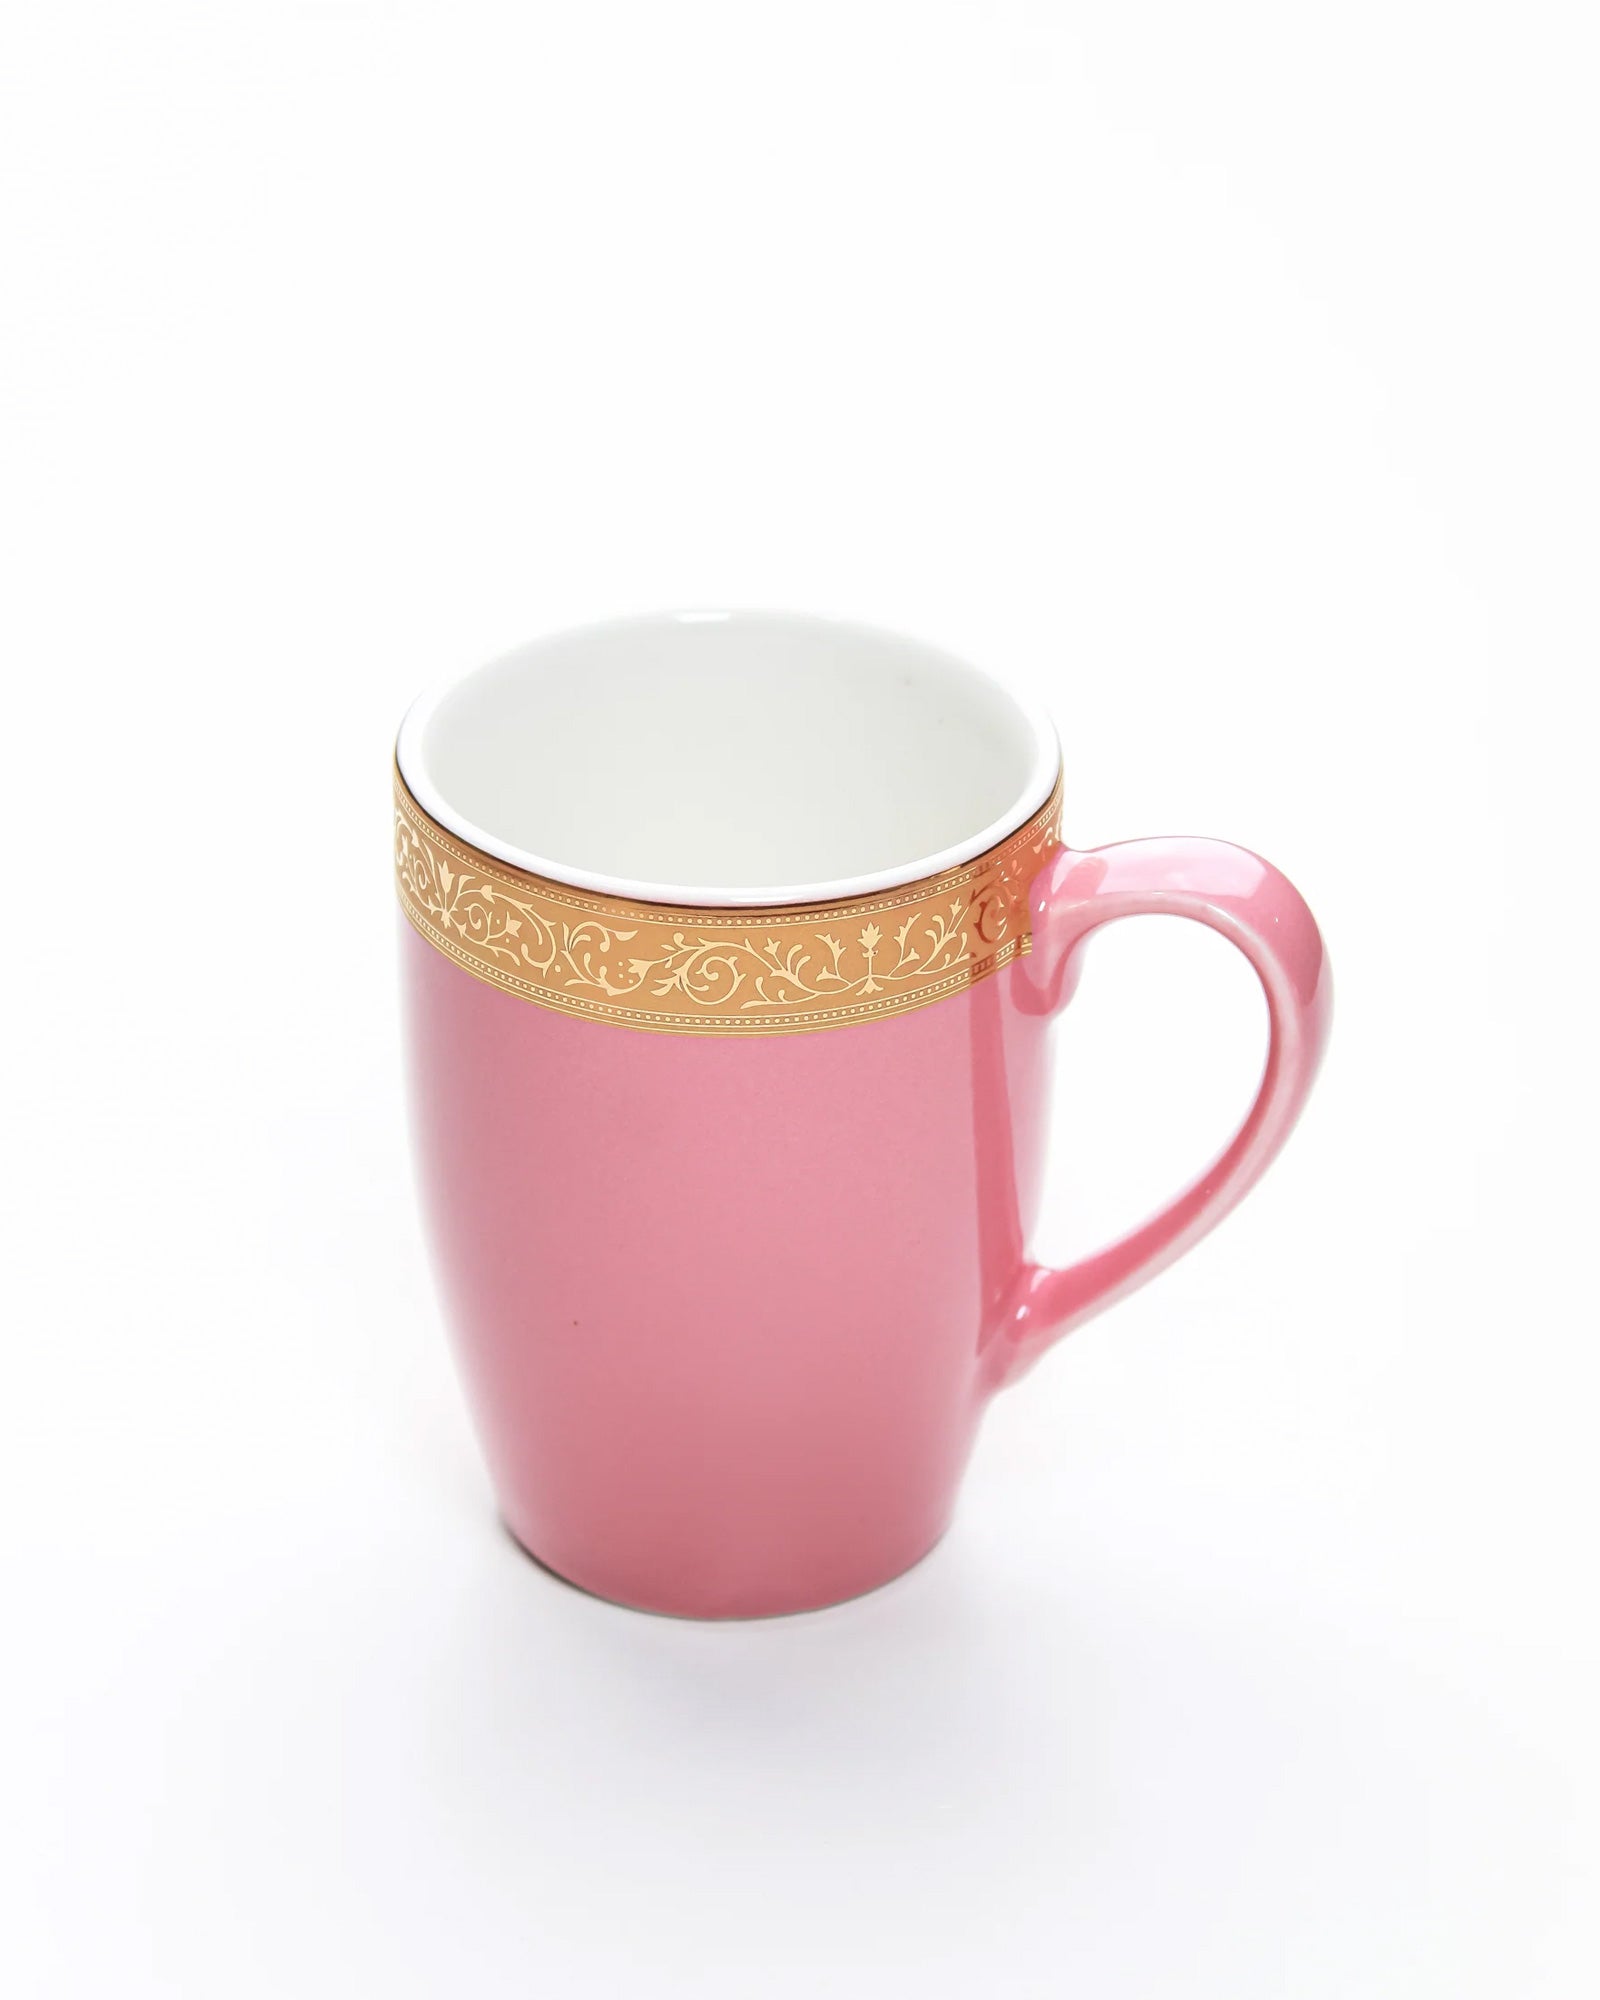 BLOOMING DALHIA / Set of 2 * 230ml || Scarlet: Premium Porcelain Mugs in Pastel Colors